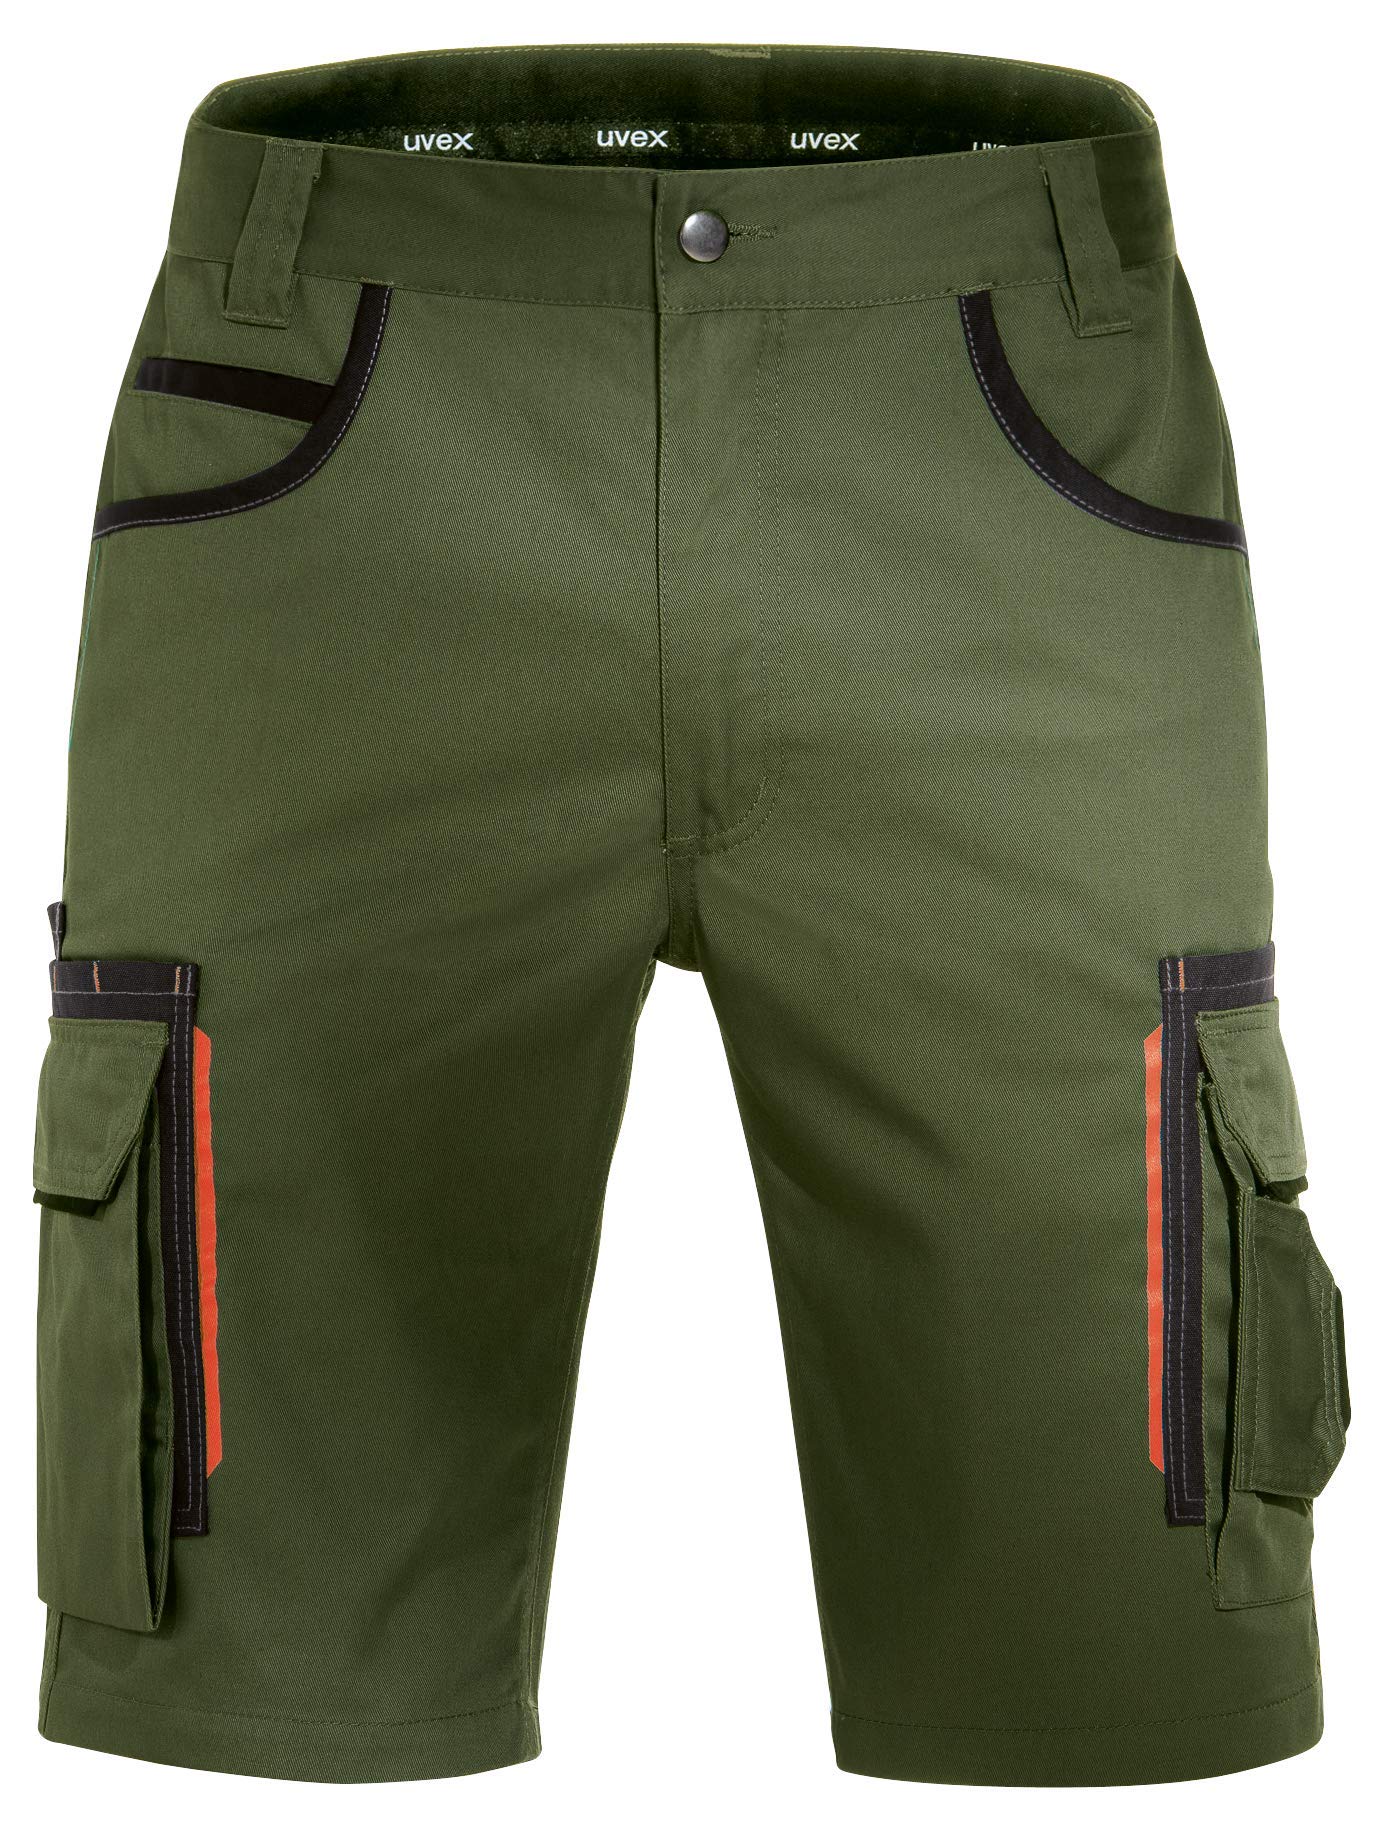 Uvex Tune-Up Arbeitshosen Männer Kurz - Shorts für die Arbeit - Grün - Gr 29W/Etikettengröße- 42